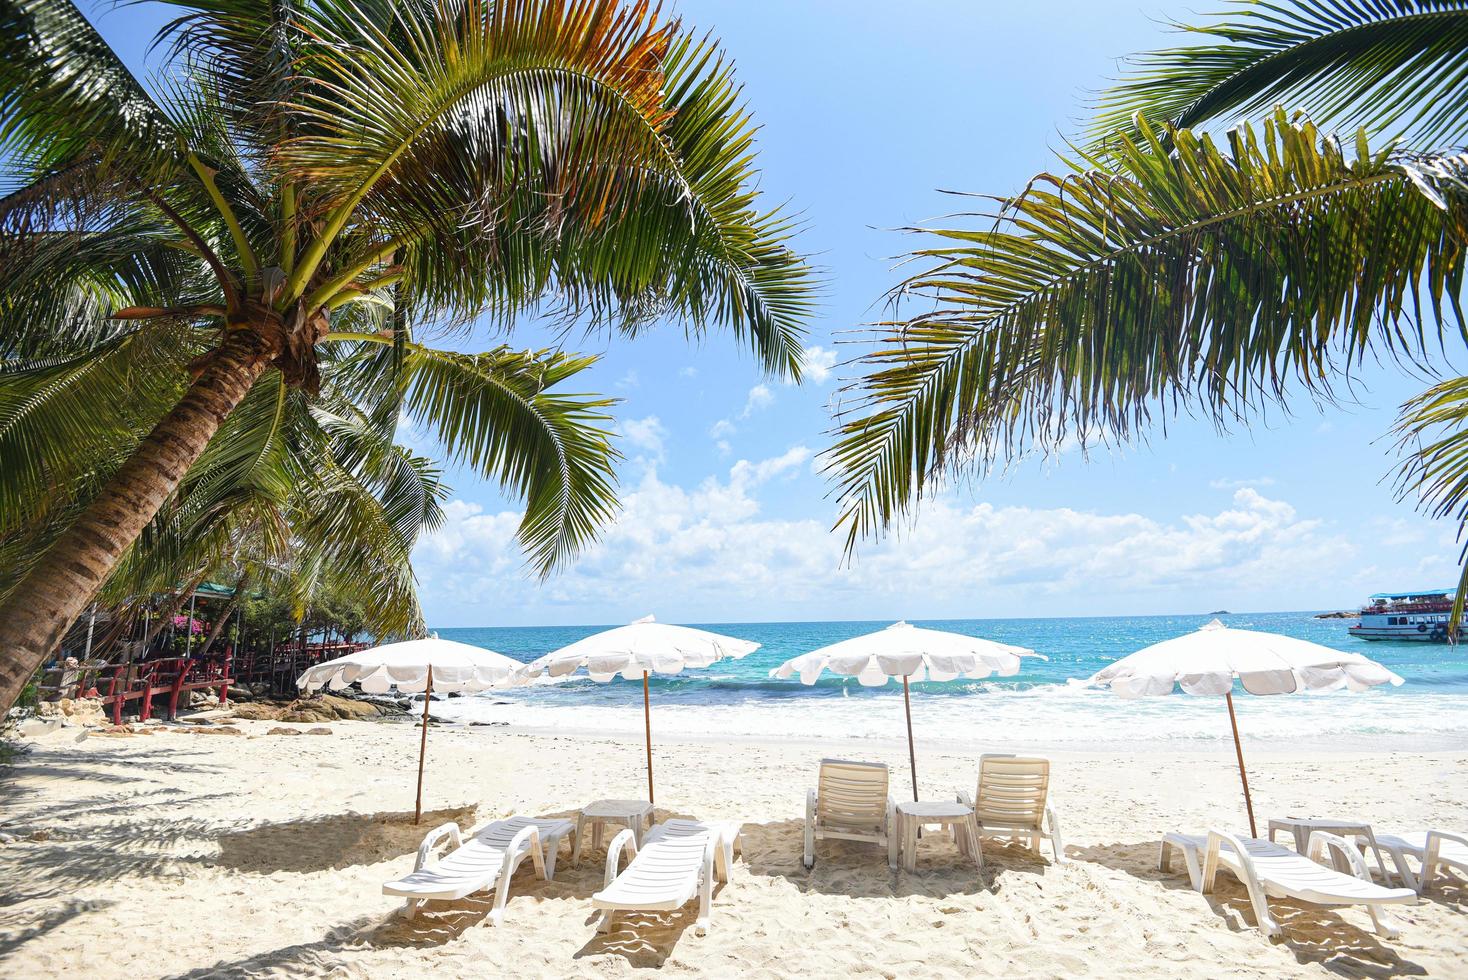 vacances d'été nature voyage beau paysage d'été avec chaise parasol sur le sable - vacances tropicales feuille de noix de coco palmier sur la plage avec la lumière du soleil sur fond bleu ciel mer et océan photo